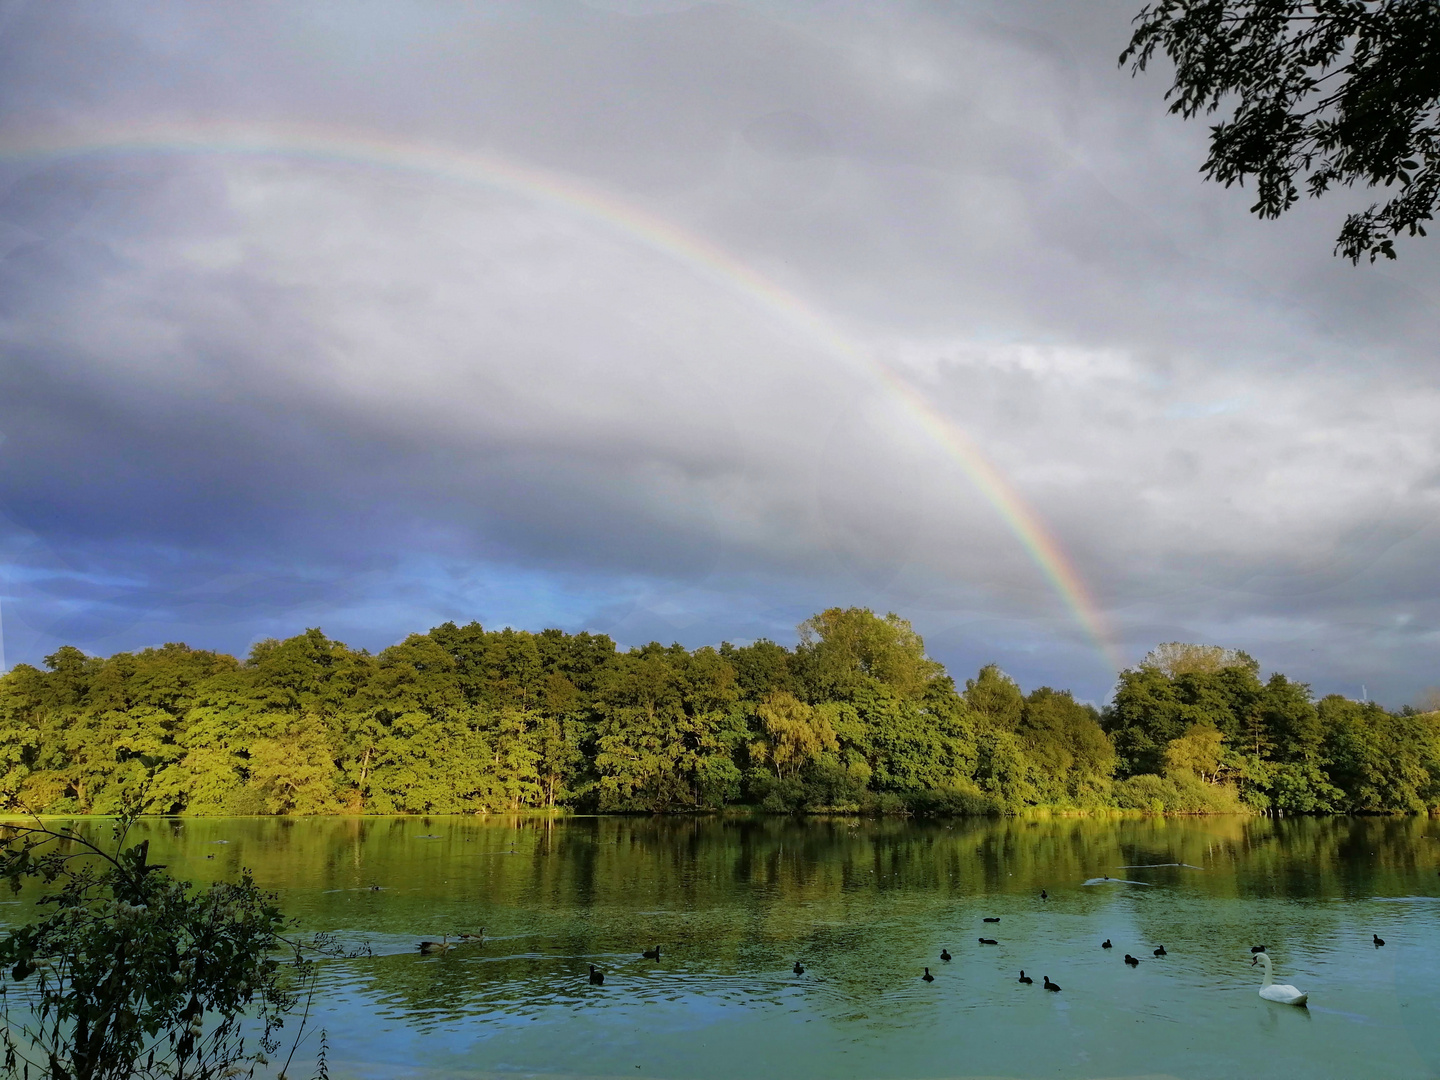 Regenbogen am De Wittsee